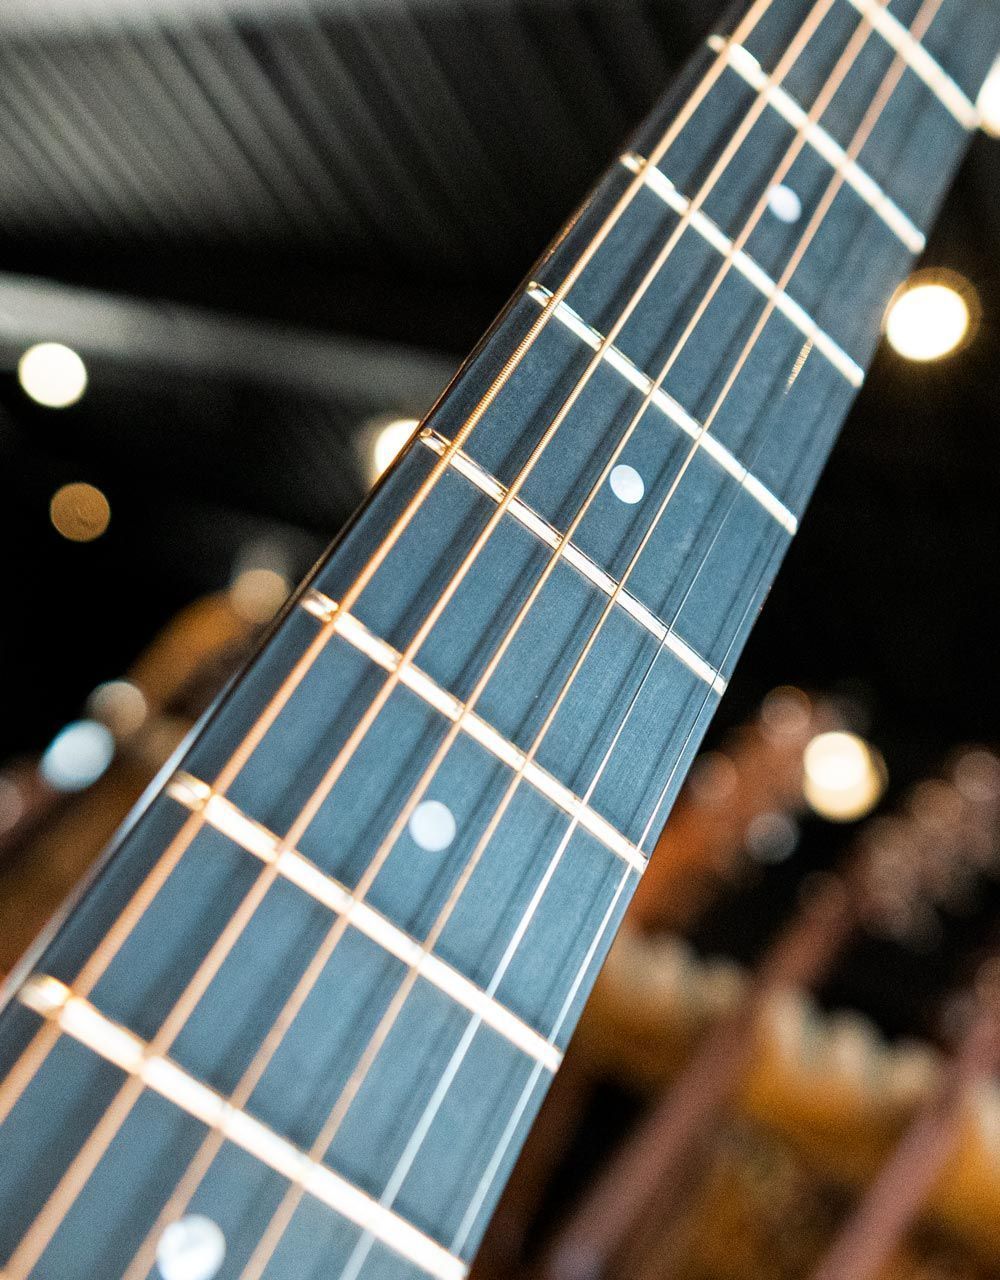 Электроакустическая гитара Sigma GMC-1E - купить в "Гитарном Клубе"